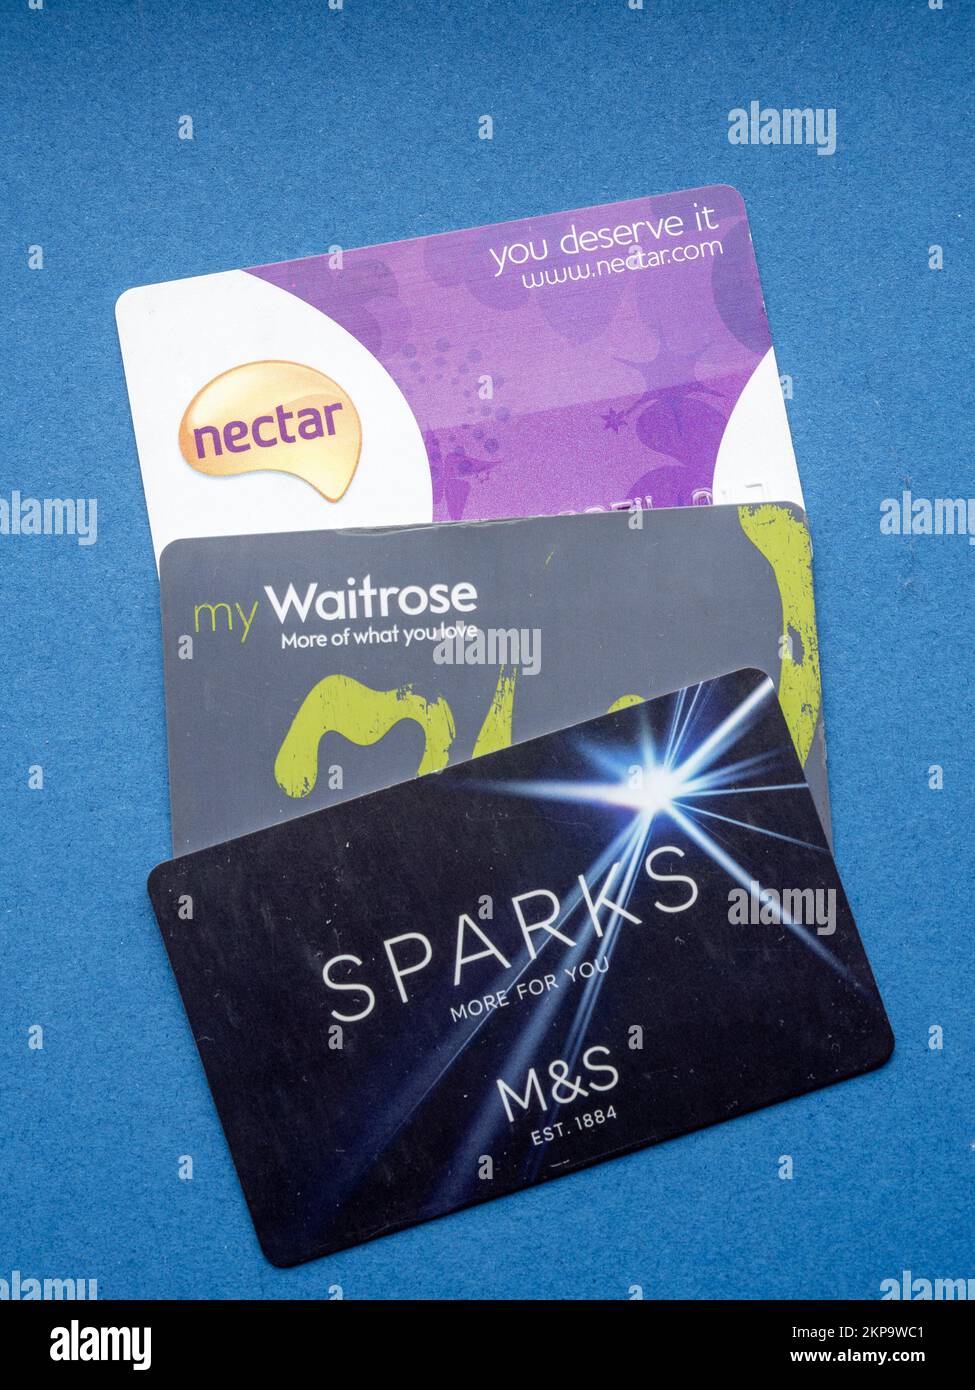 Trois cartes de fidélité de magasin - Sparks, Waitrose et Nectar - sur fond bleu, Royaume-Uni Banque D'Images